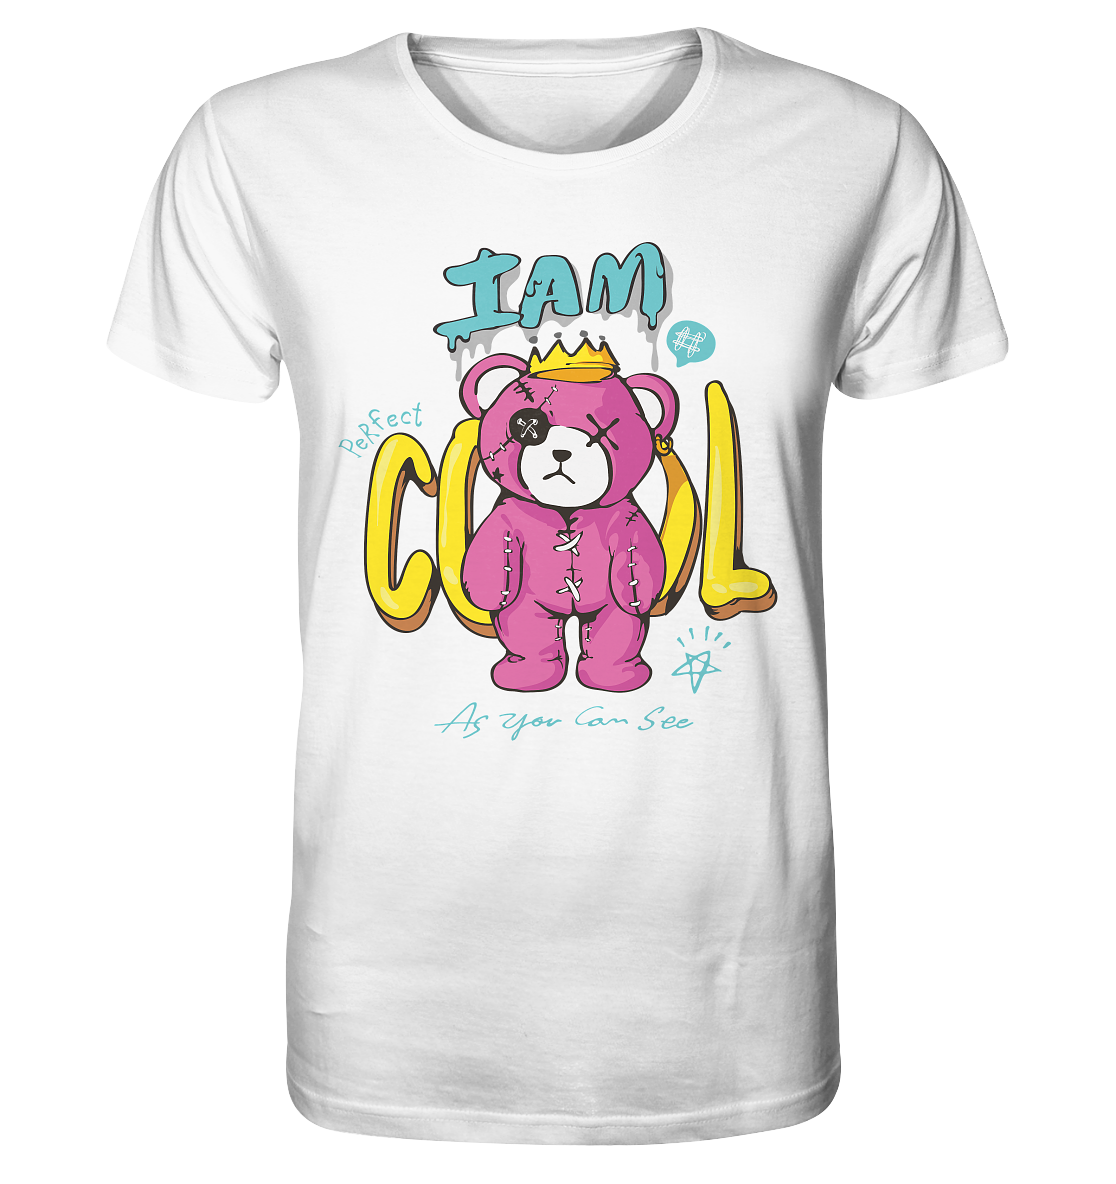 I am cool Teddy - Organic Shirt